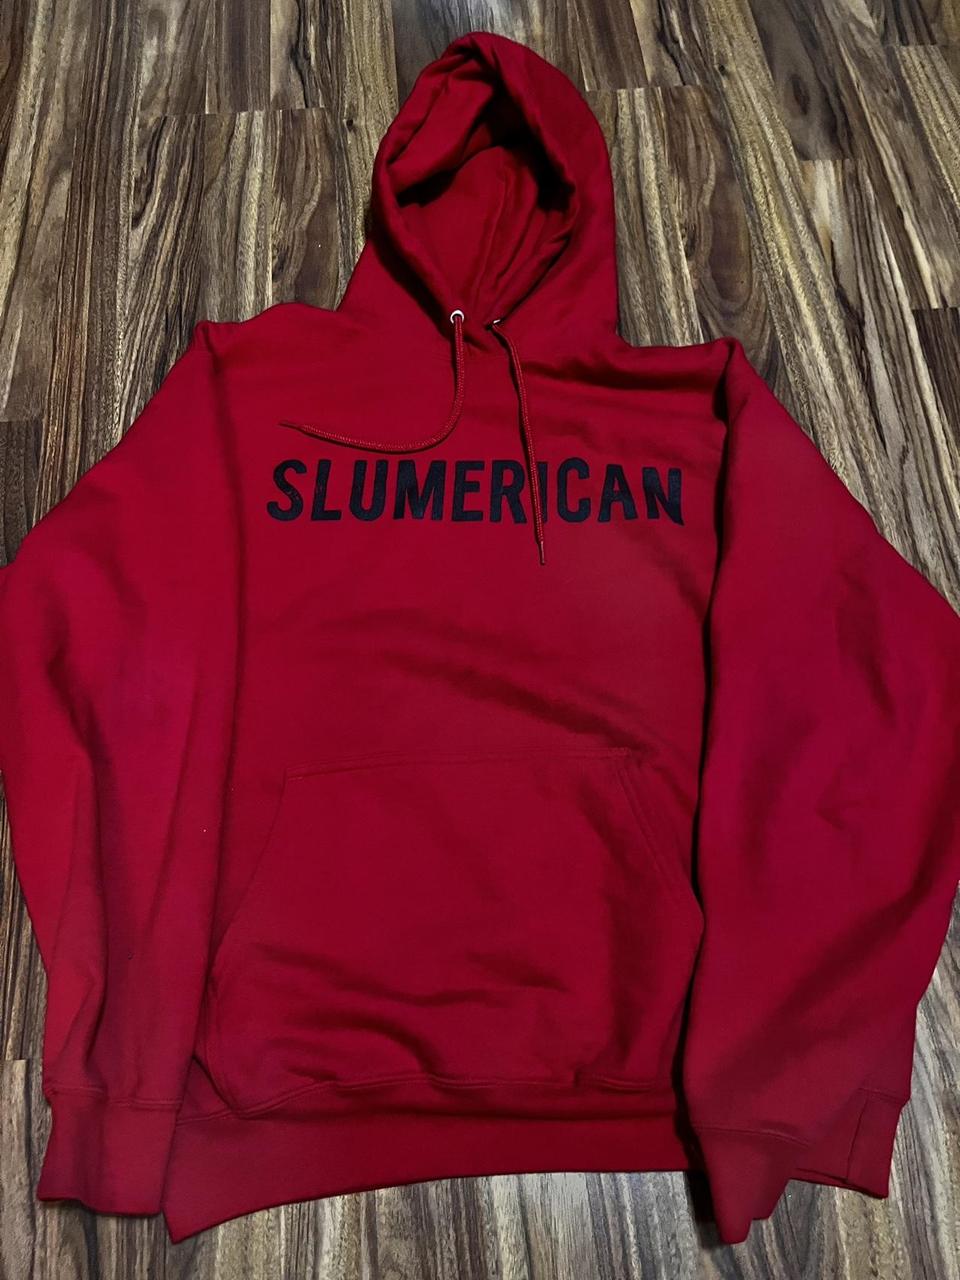 Like new red Slumerican hoodie. #slumerican... - Depop